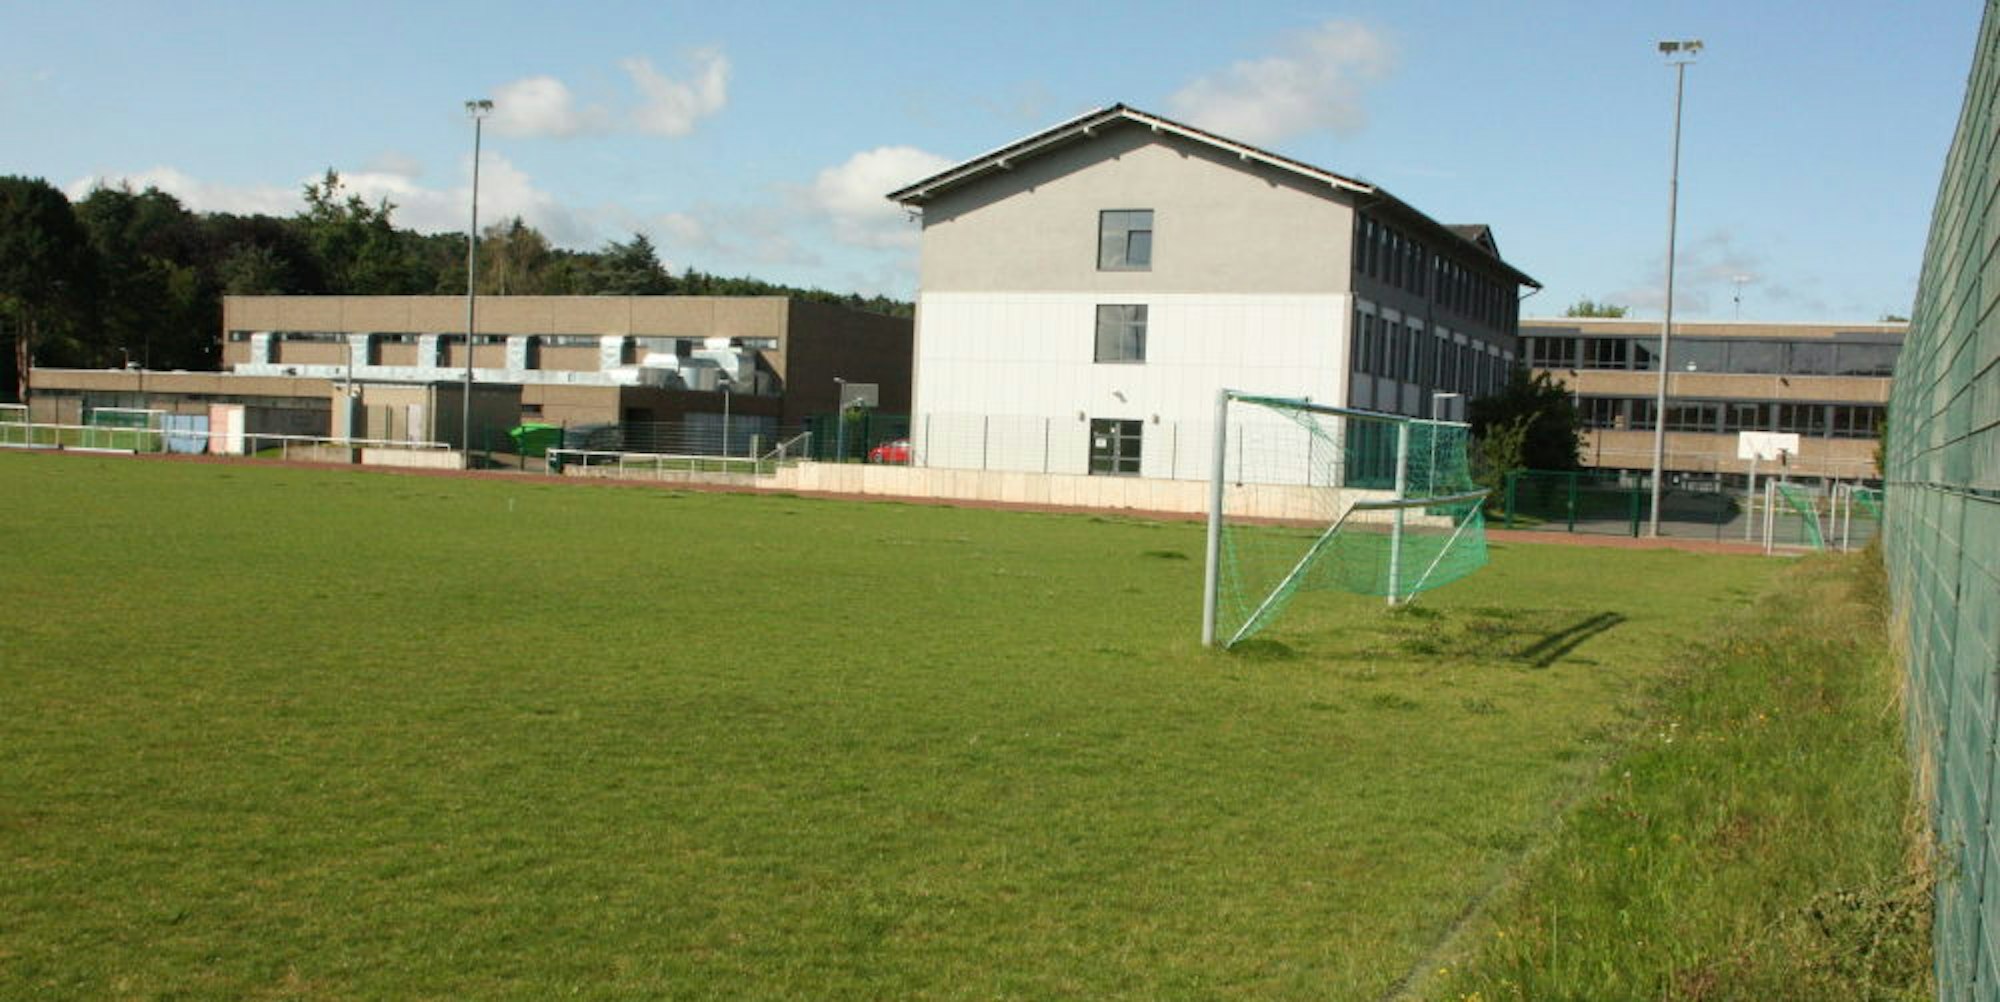 Ab Frühjahr will die TuS Mechernich auf dem Rasenplatz im Schulzentrum unter anderem die Meisterschaftsspiele ihrer Bezirksligamannschaft austragen.